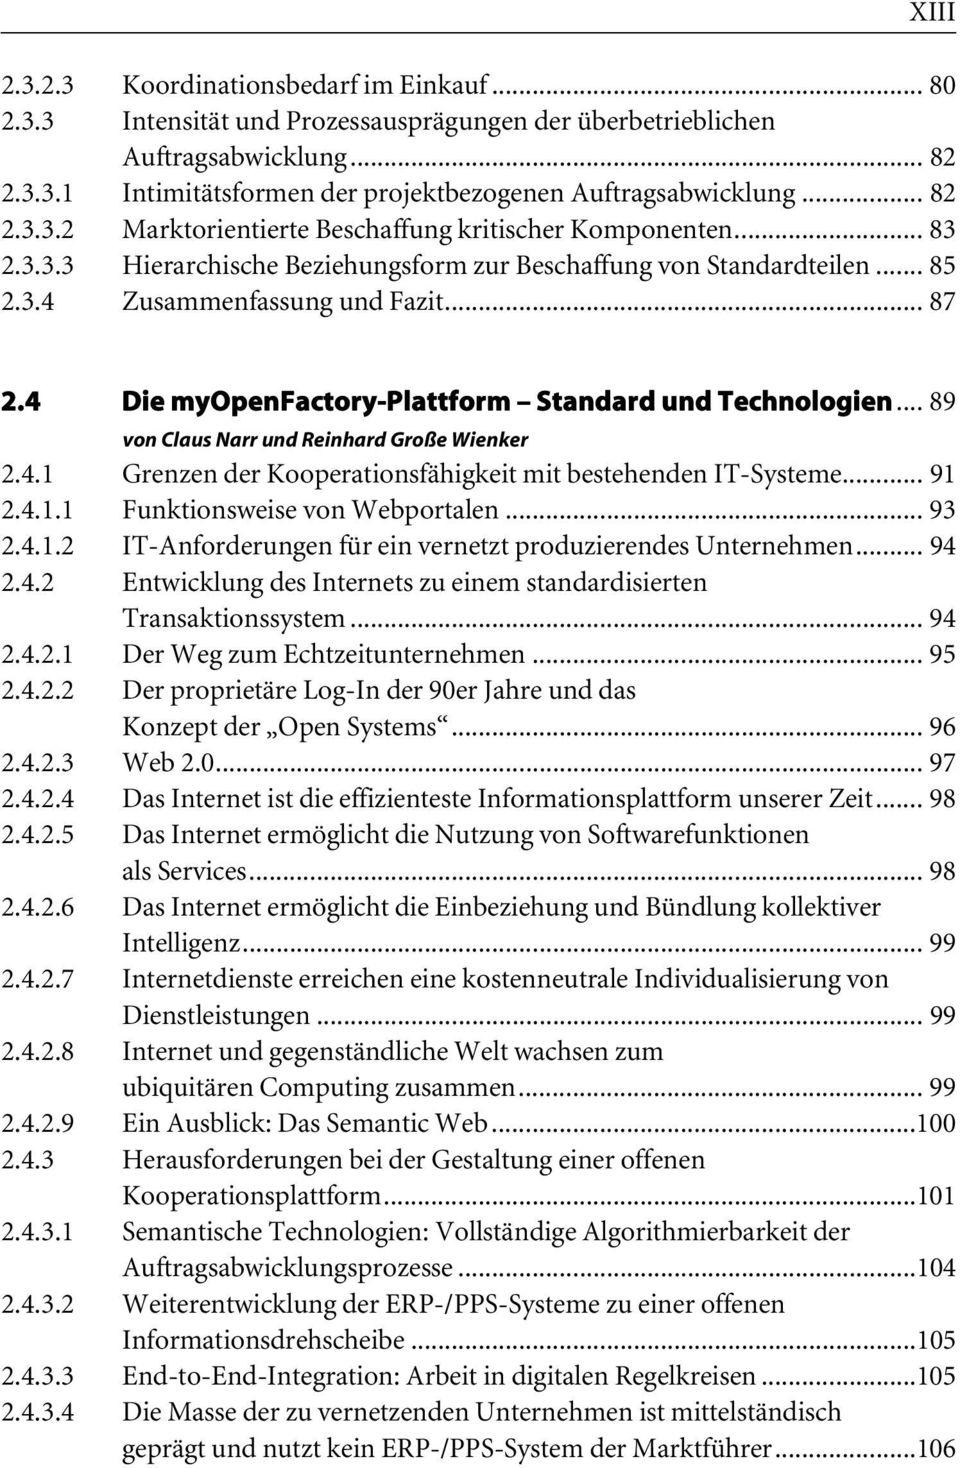 4 Die myopenfactory-plattform Standard und Technologien... 89 von Claus Narr und Reinhard Große Wienker 2.4.1 Grenzen der Kooperationsfähigkeit mit bestehenden IT-Systeme... 91 2.4.1.1 Funktionsweise von Webportalen.